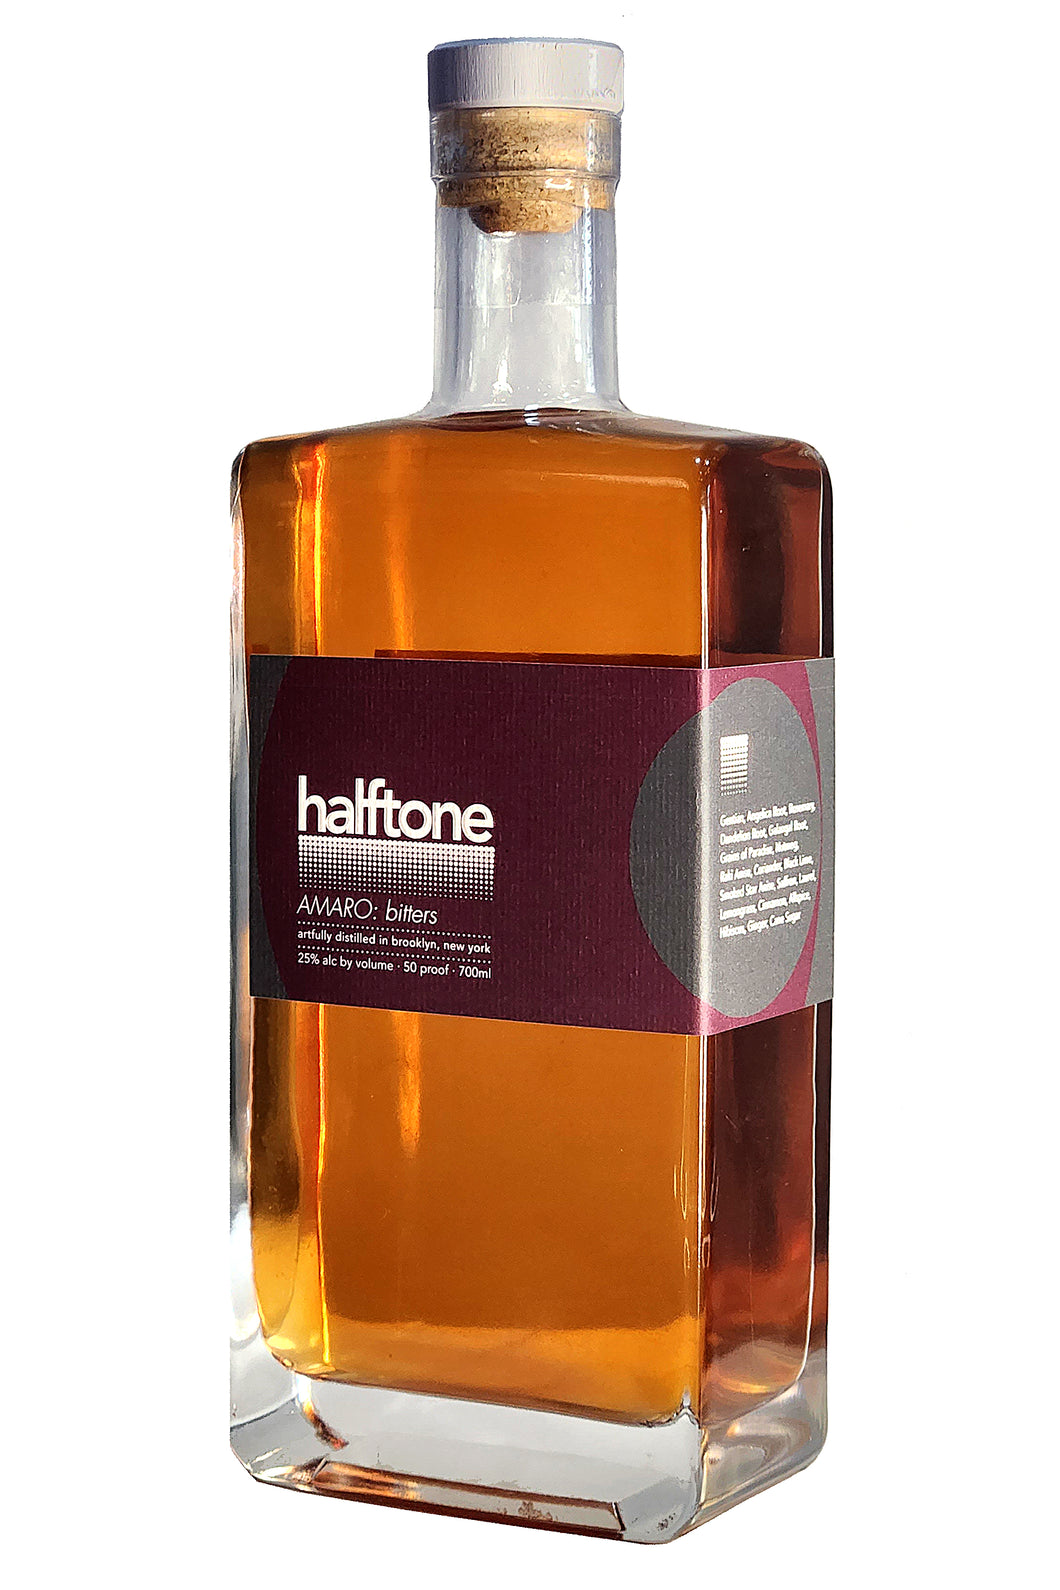 Halftone Amaro: Bitters